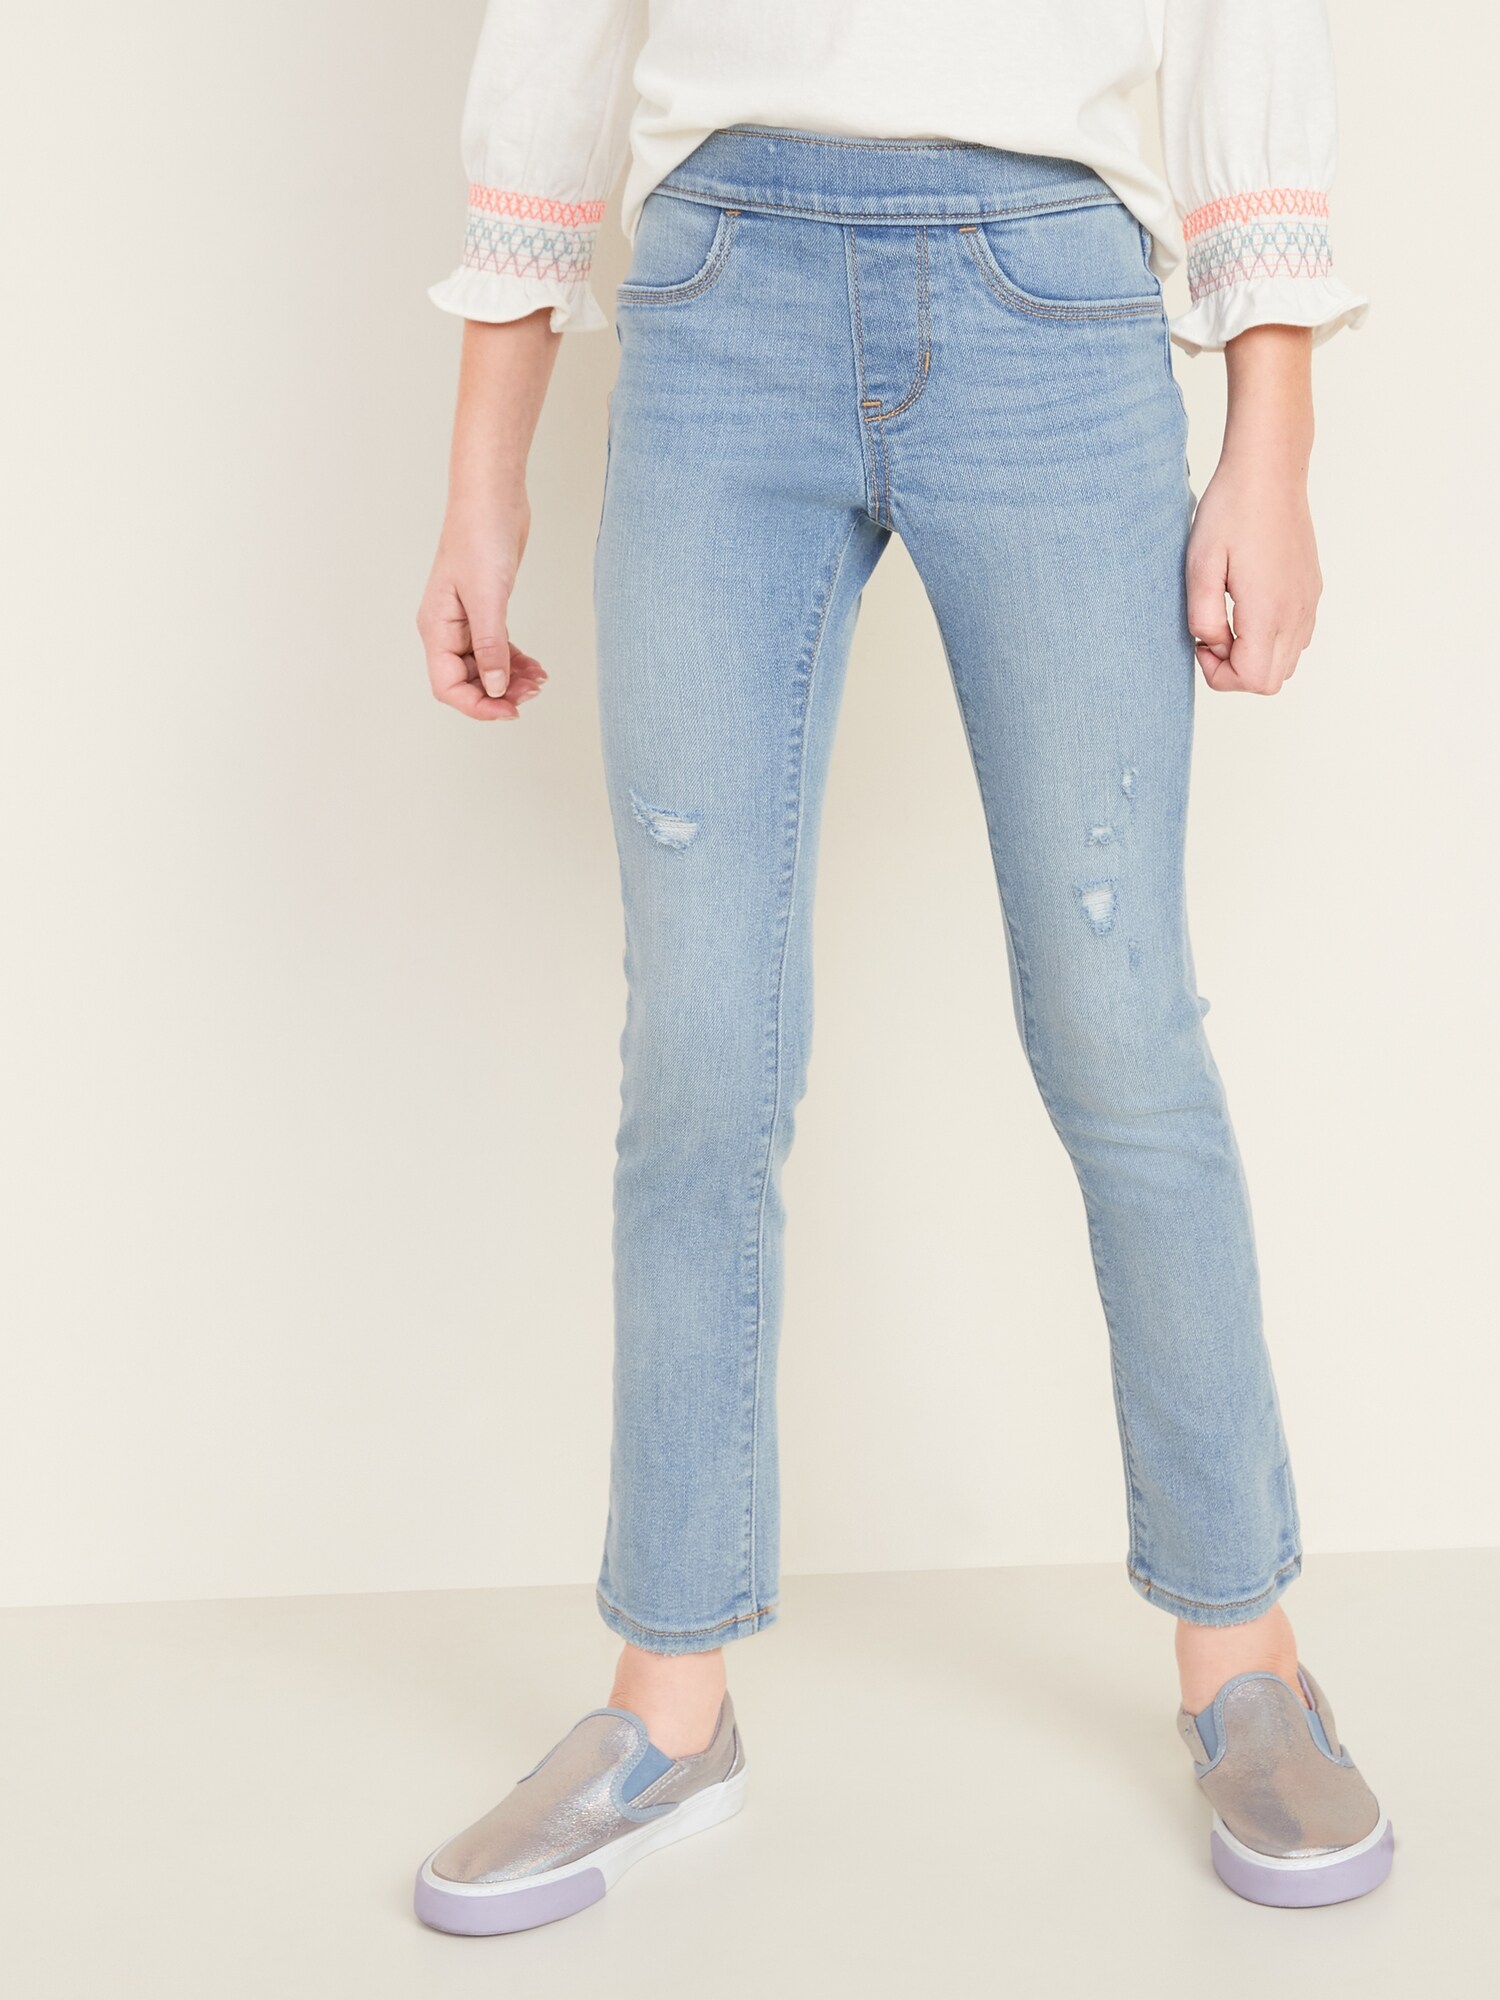 jeans for skinny girls